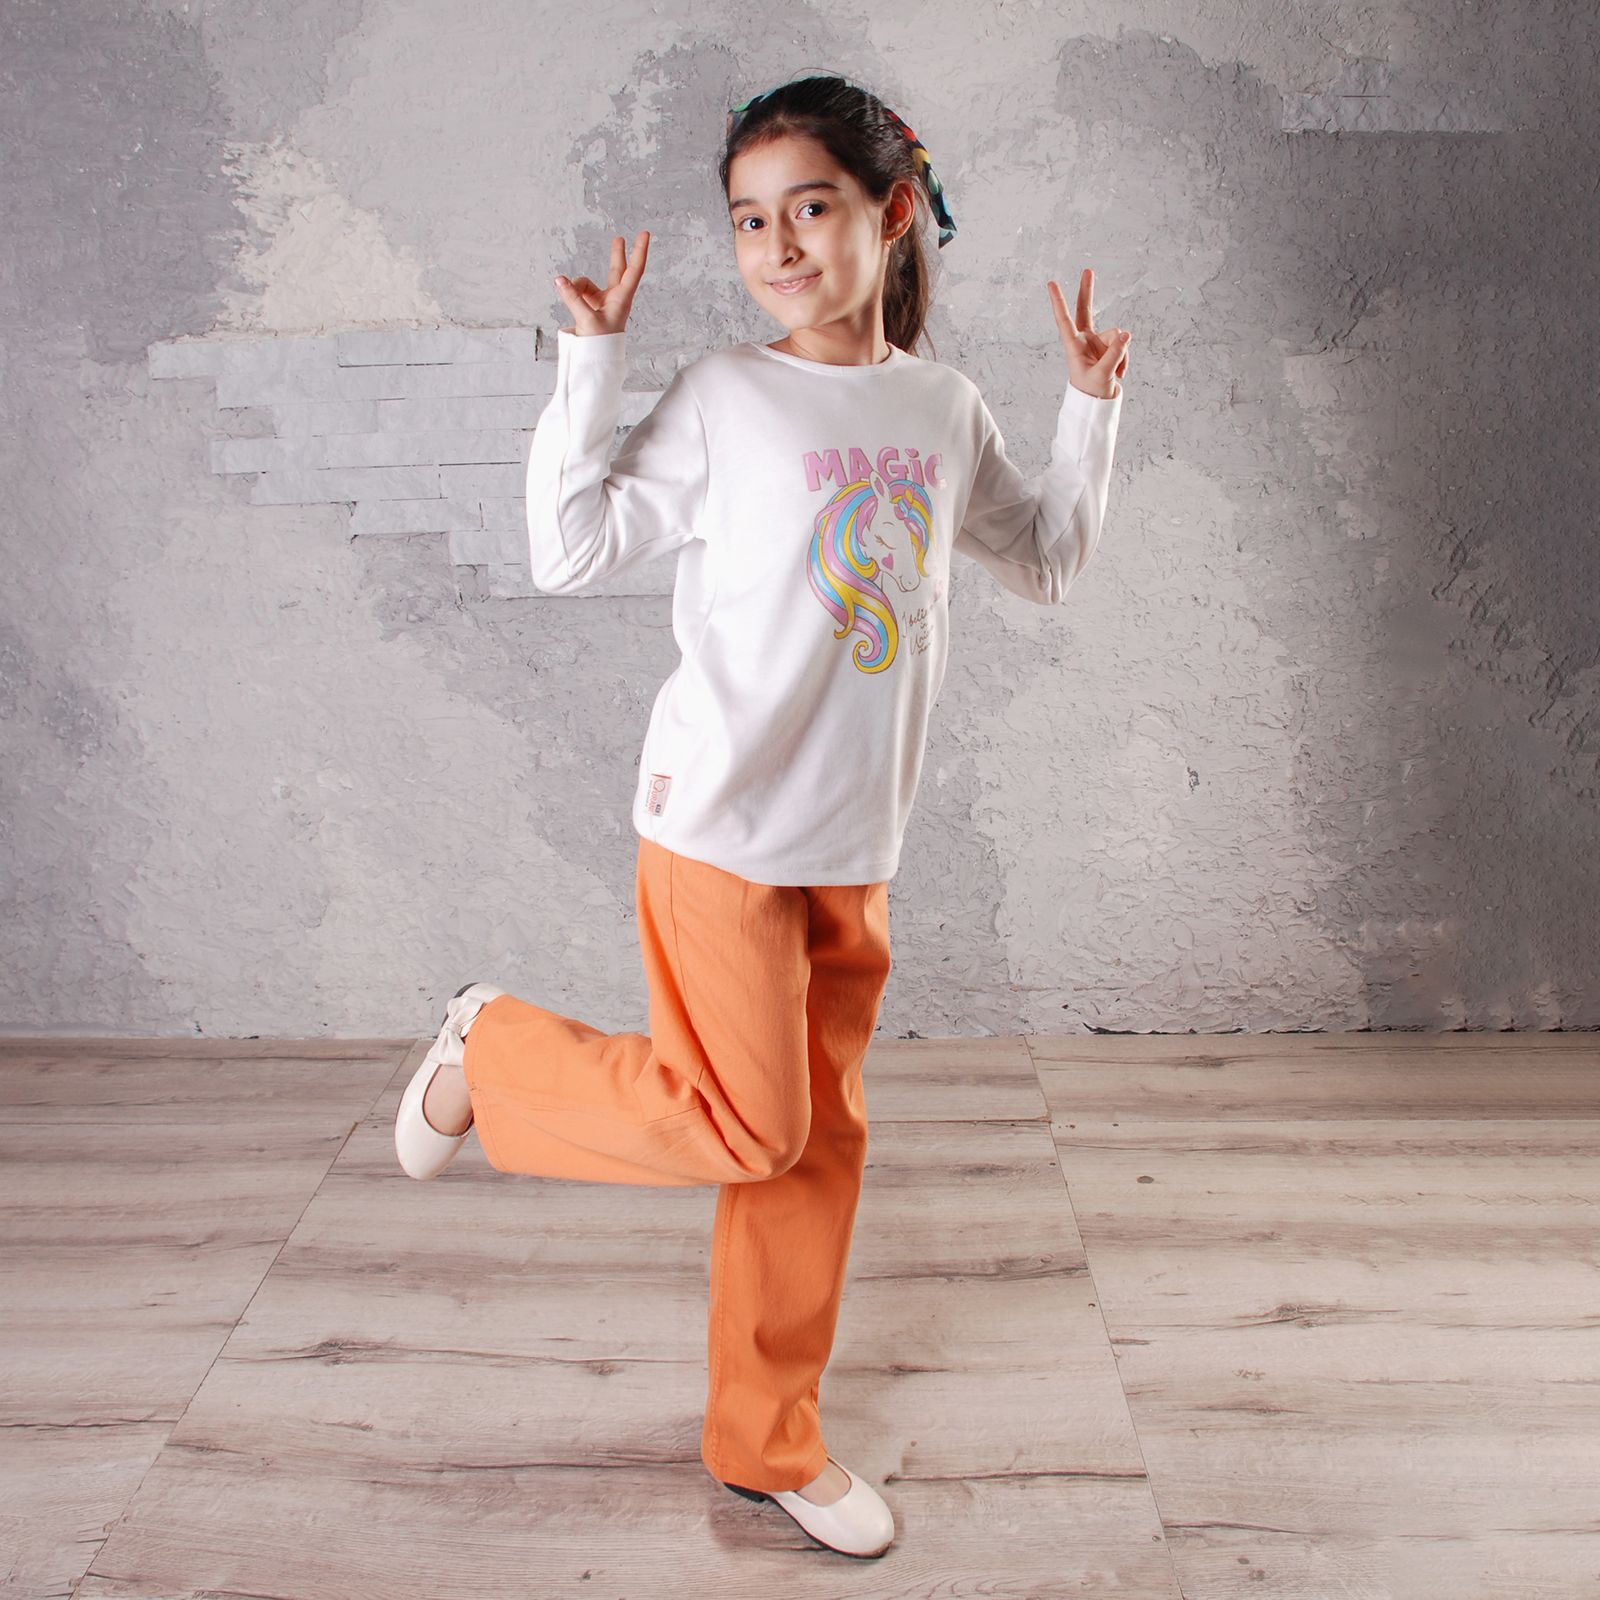 ست تی شرت و شلوار دخترانه قرآنی مدل پونی کد ORG212305 -  - 2